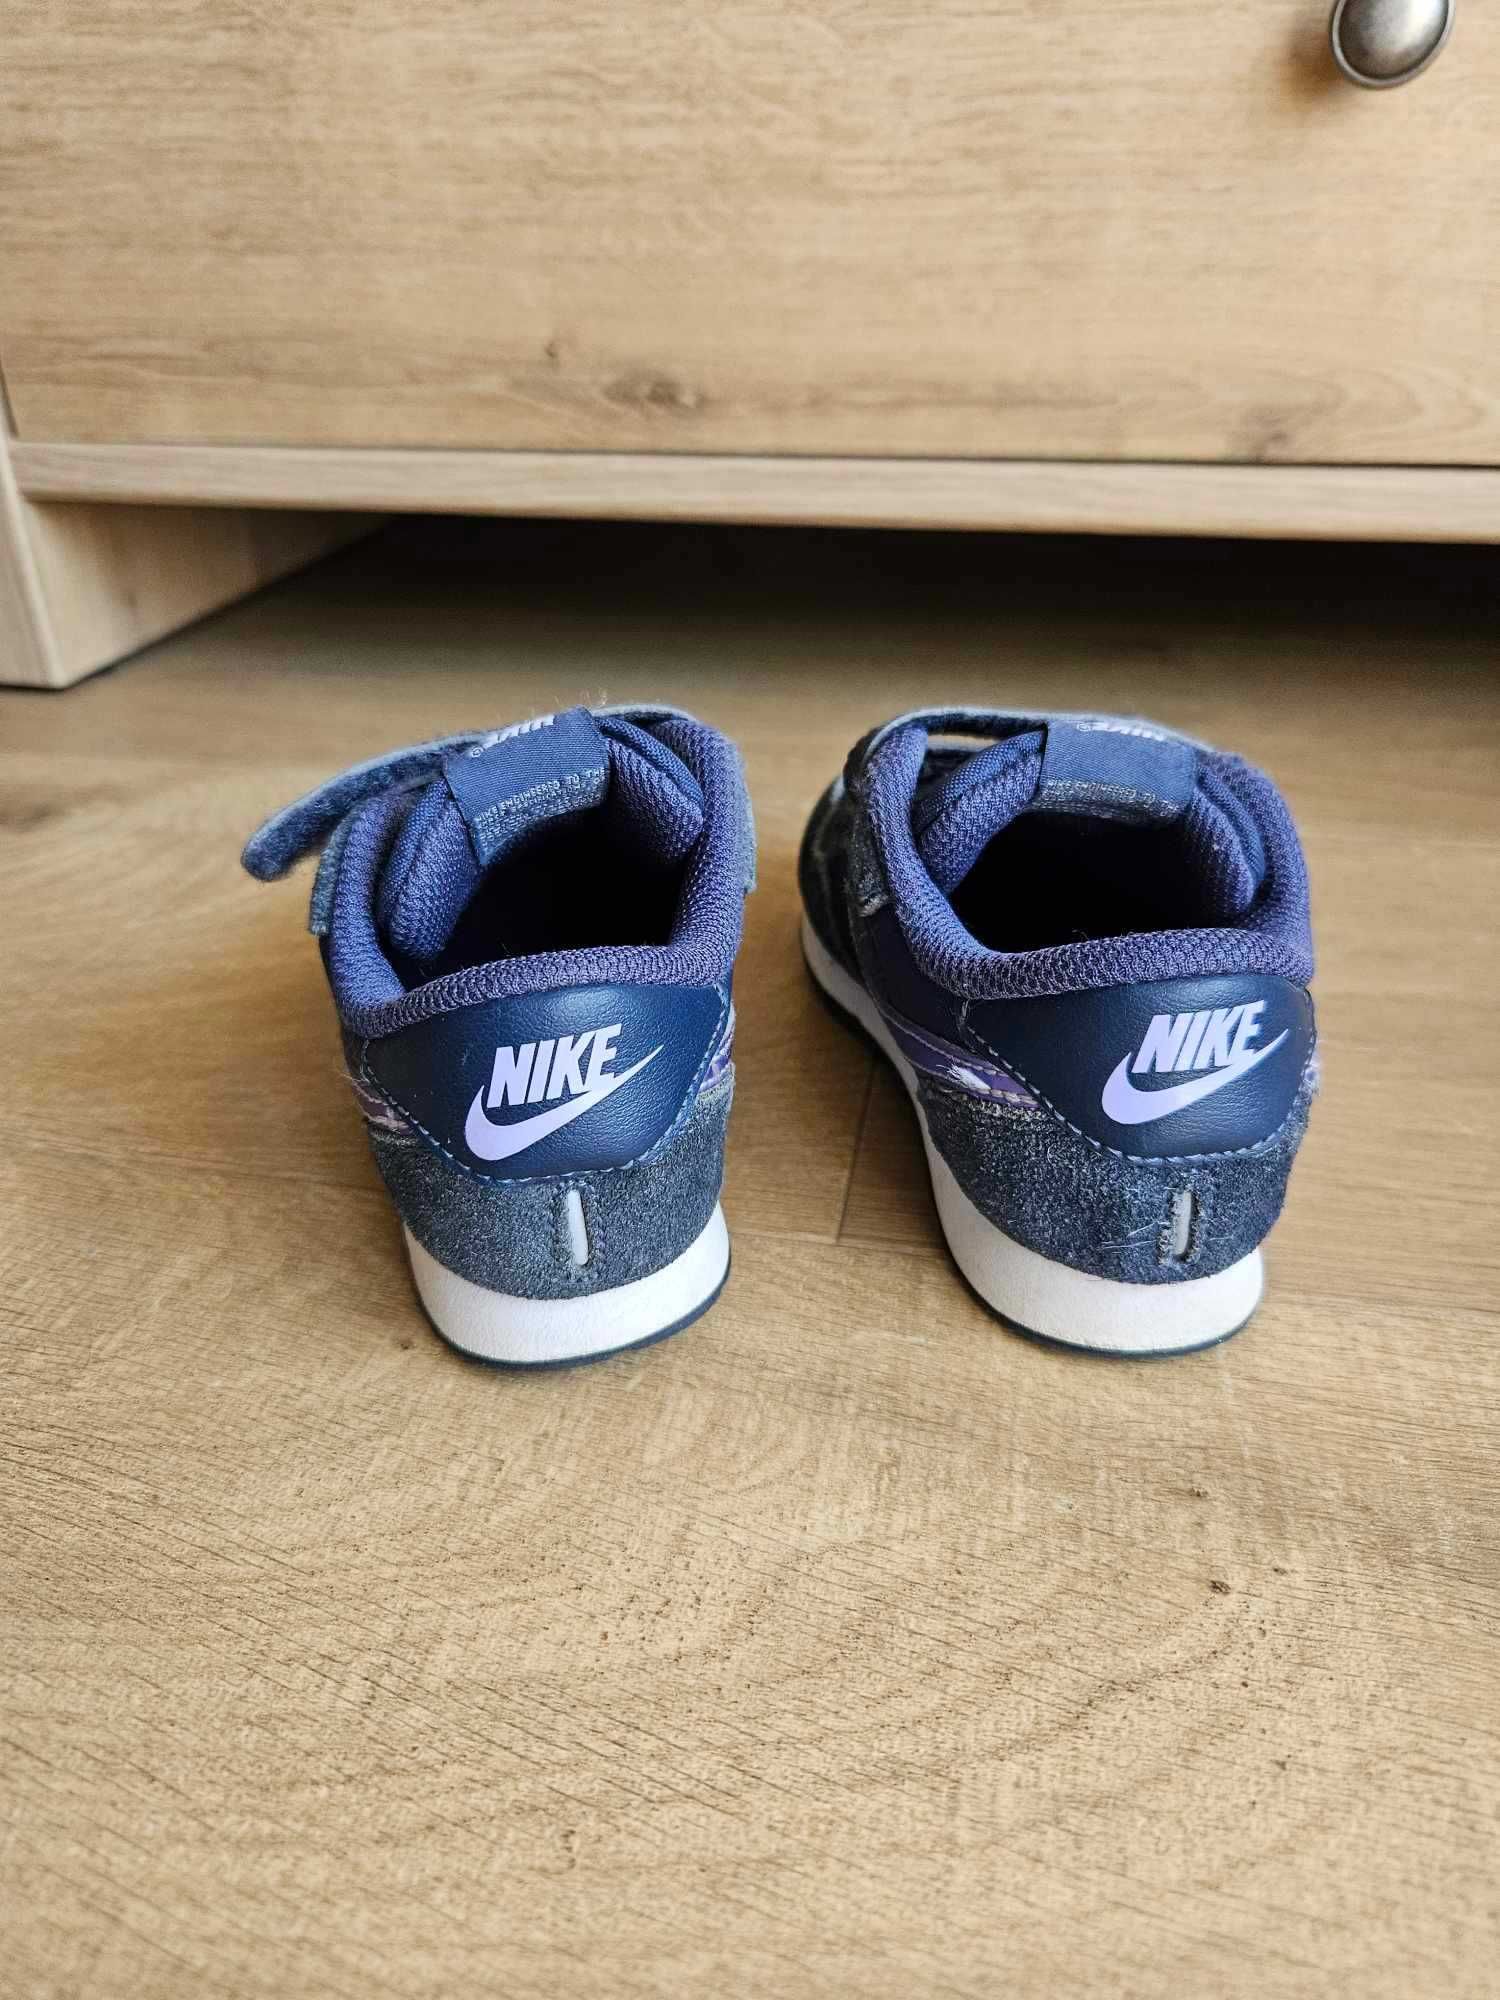 Buty dziecięce Nike adidasy rozm. 25